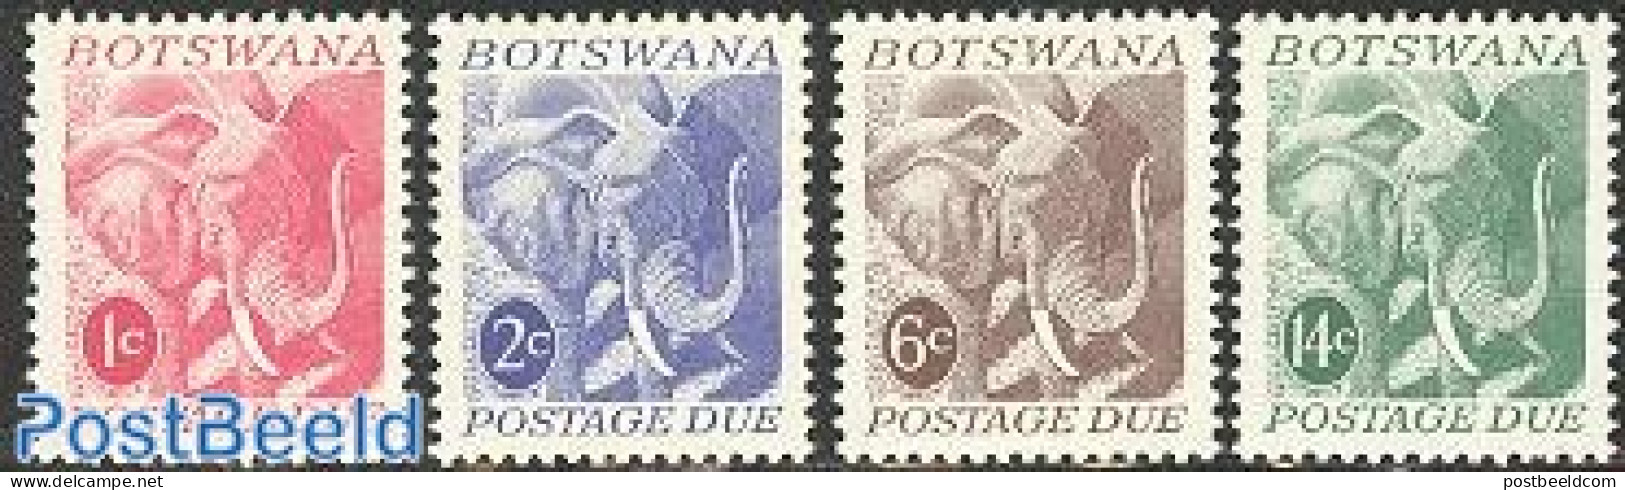 Botswana 1971 Postage Due 4v, Elephant, Mint NH, Nature - Animals (others & Mixed) - Elephants - Botswana (1966-...)